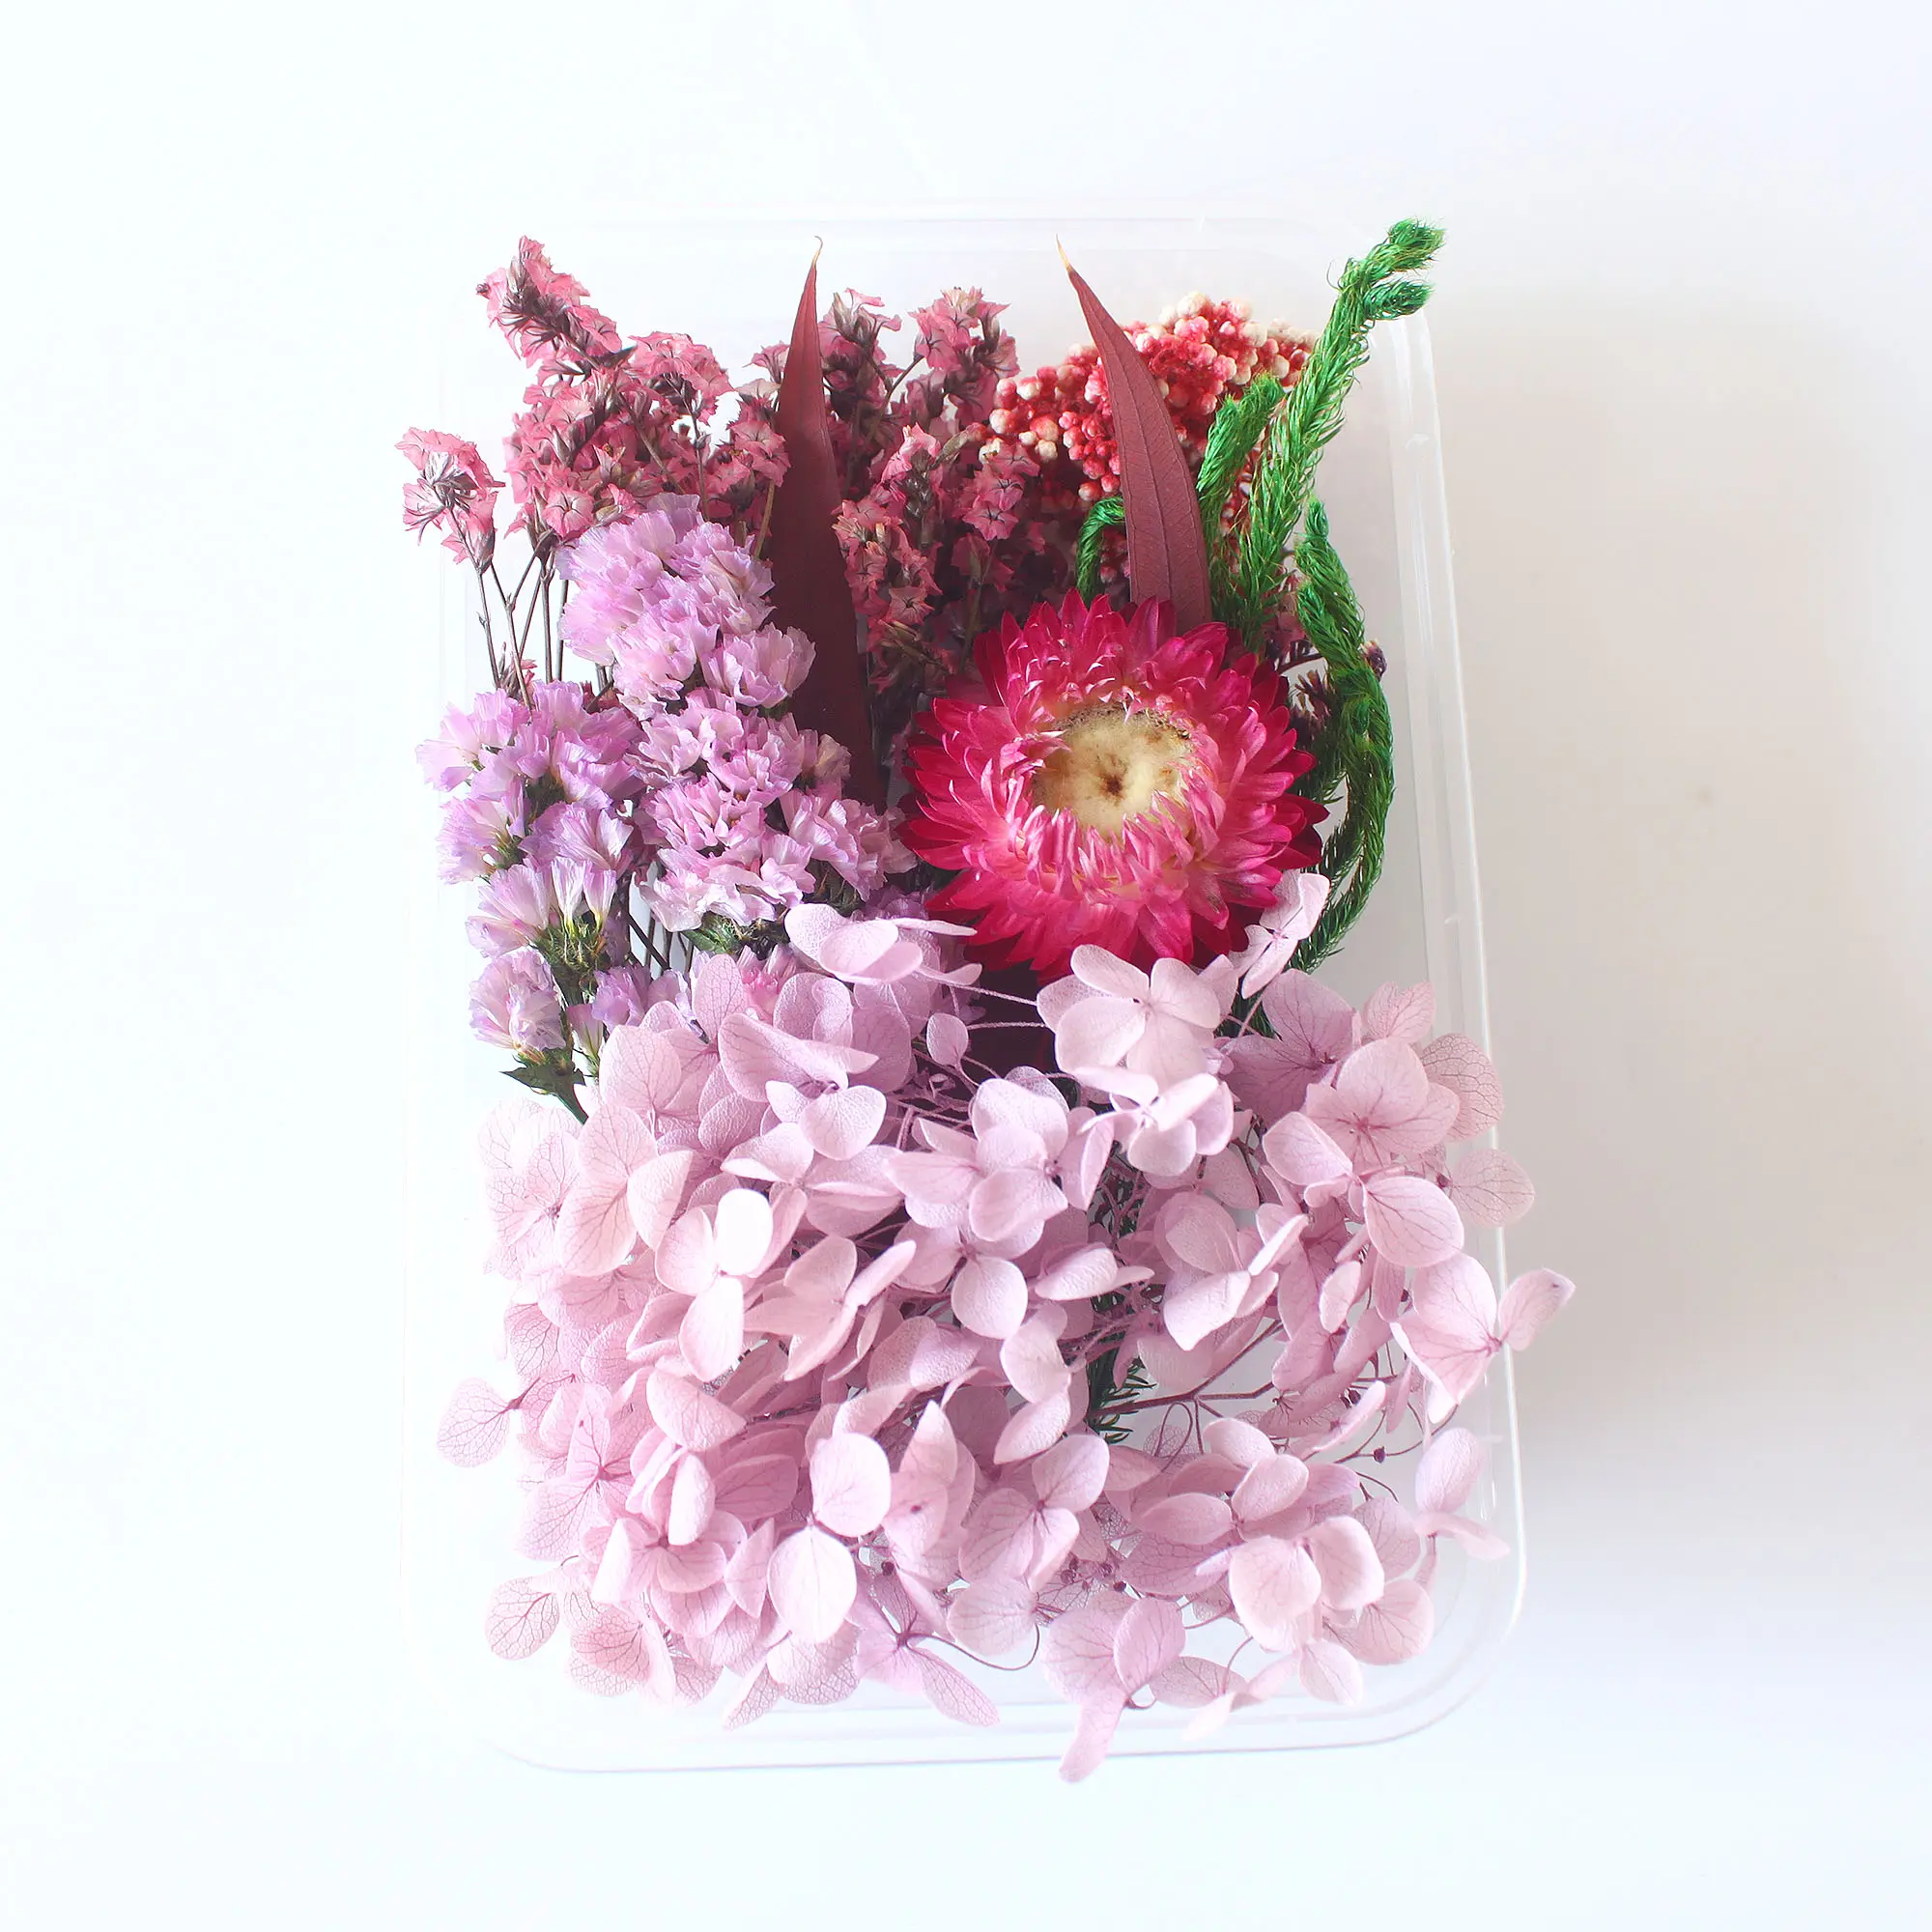 1 Schachtel mit Arten der manuellen Kreation Natürliche konservierte Blumen Trocken blumen für Harz handwerk